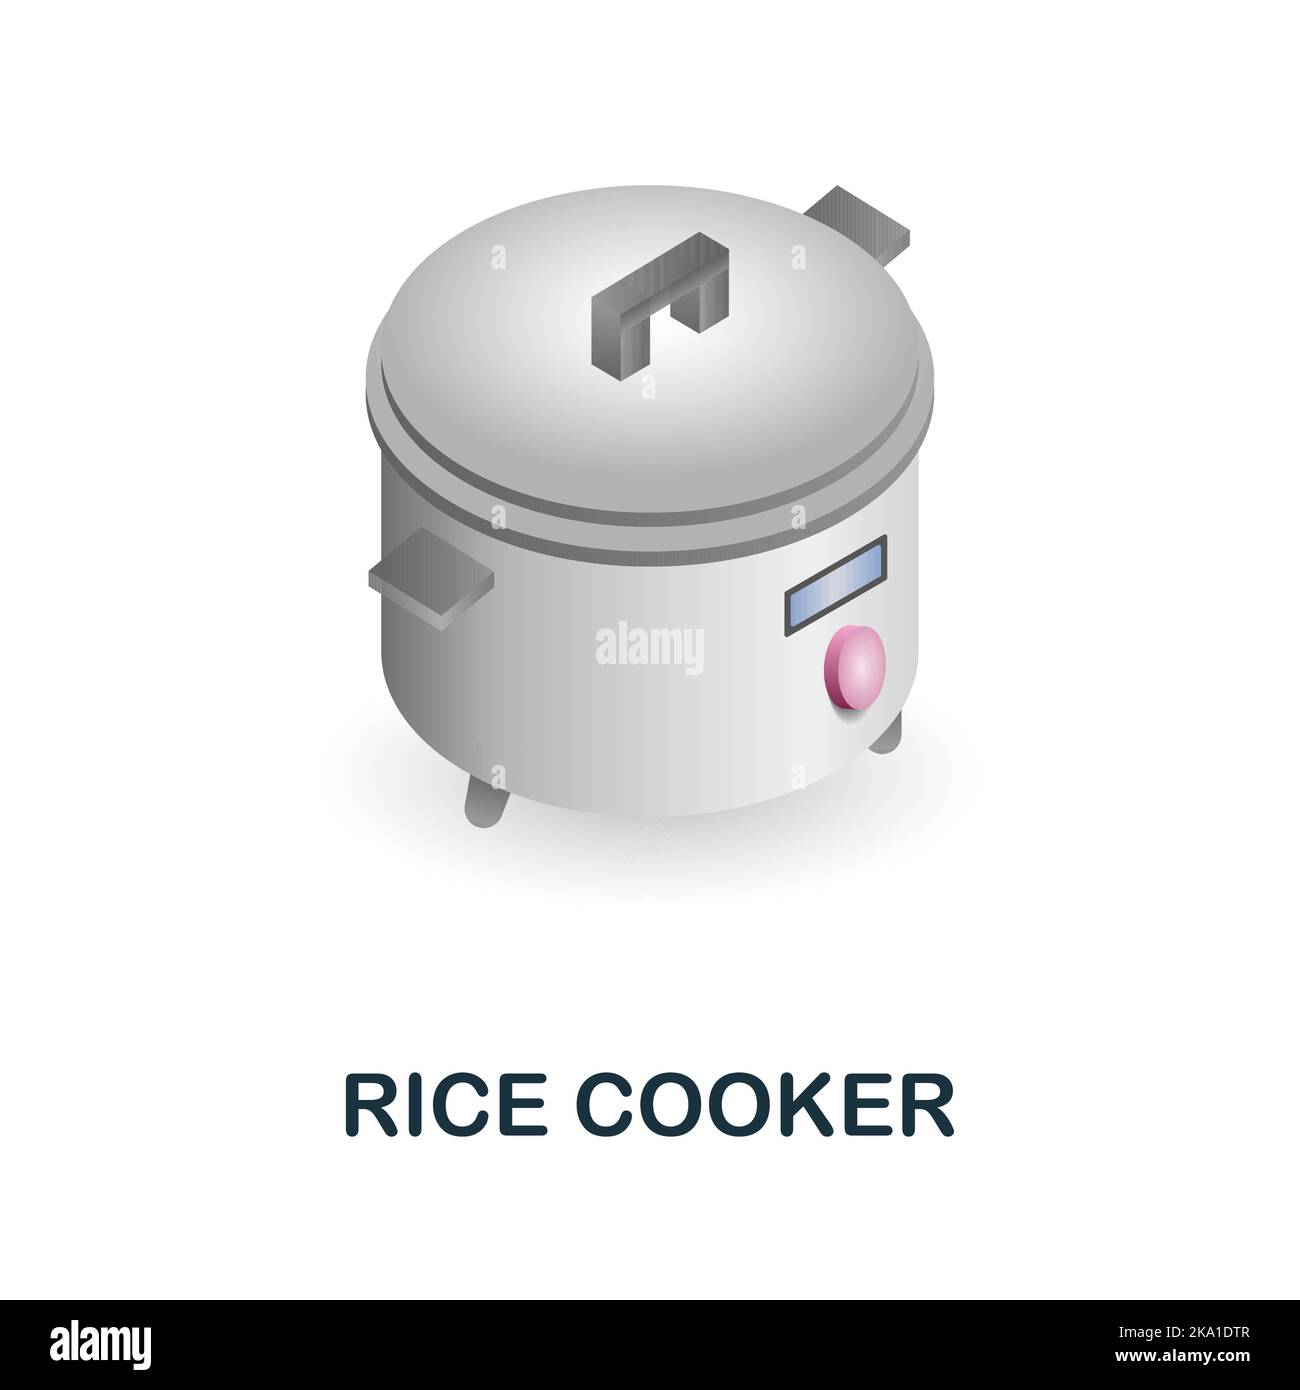 Icône du cuiseur à riz. 3d illustration de la collection de fournitures de cuisine. Icône Creative Rice Cooker 3D pour la conception web, les modèles, les infographies et plus encore Illustration de Vecteur